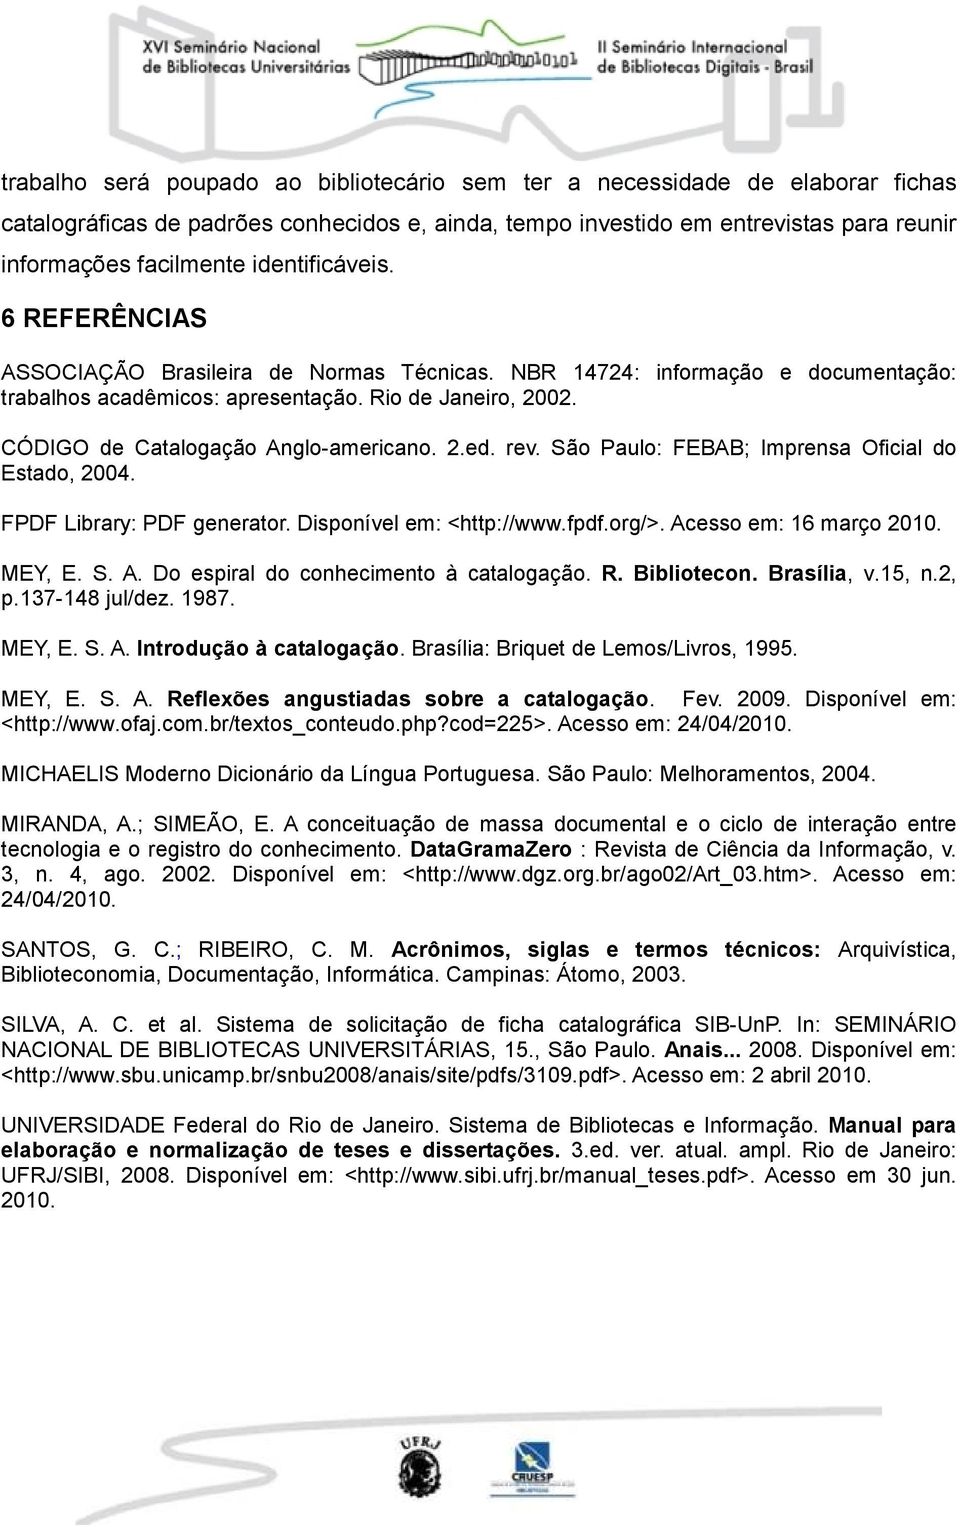 CÓDIGO de Catalogação Anglo-americano. 2.ed. rev. São Paulo: FEBAB; Imprensa Oficial do Estado, 2004. FPDF Library: PDF generator. Disponível em: <http://www.fpdf.org/>. Acesso em: 16 março 2010.